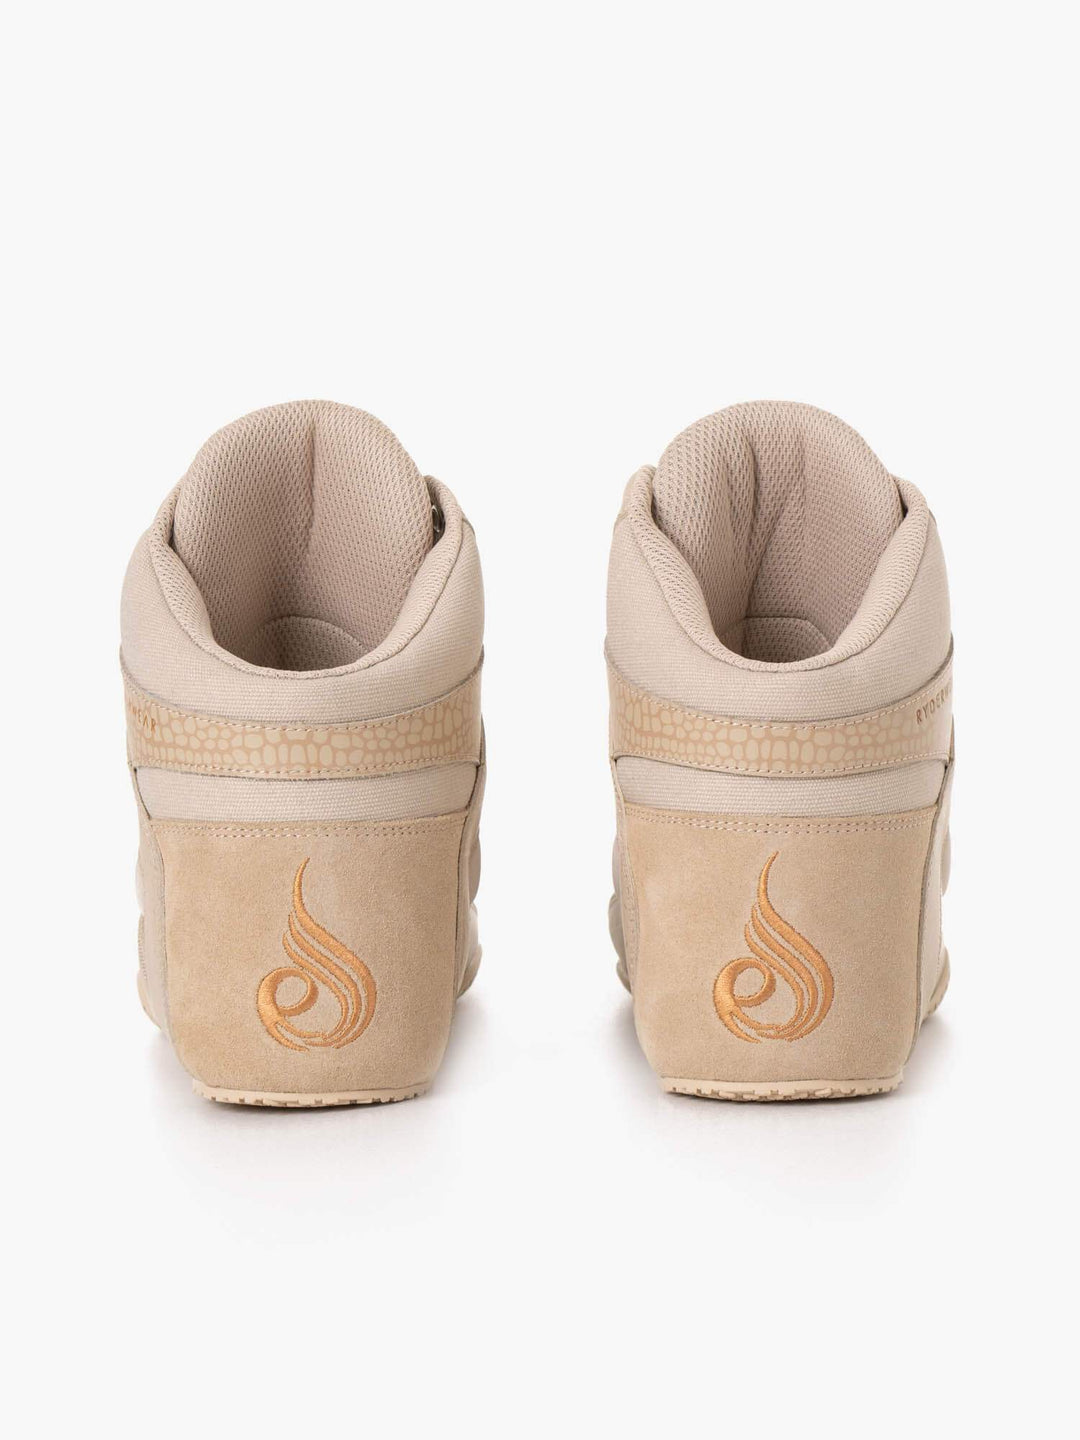 D-Mak Rapid - Sand Shoes Ryderwear 